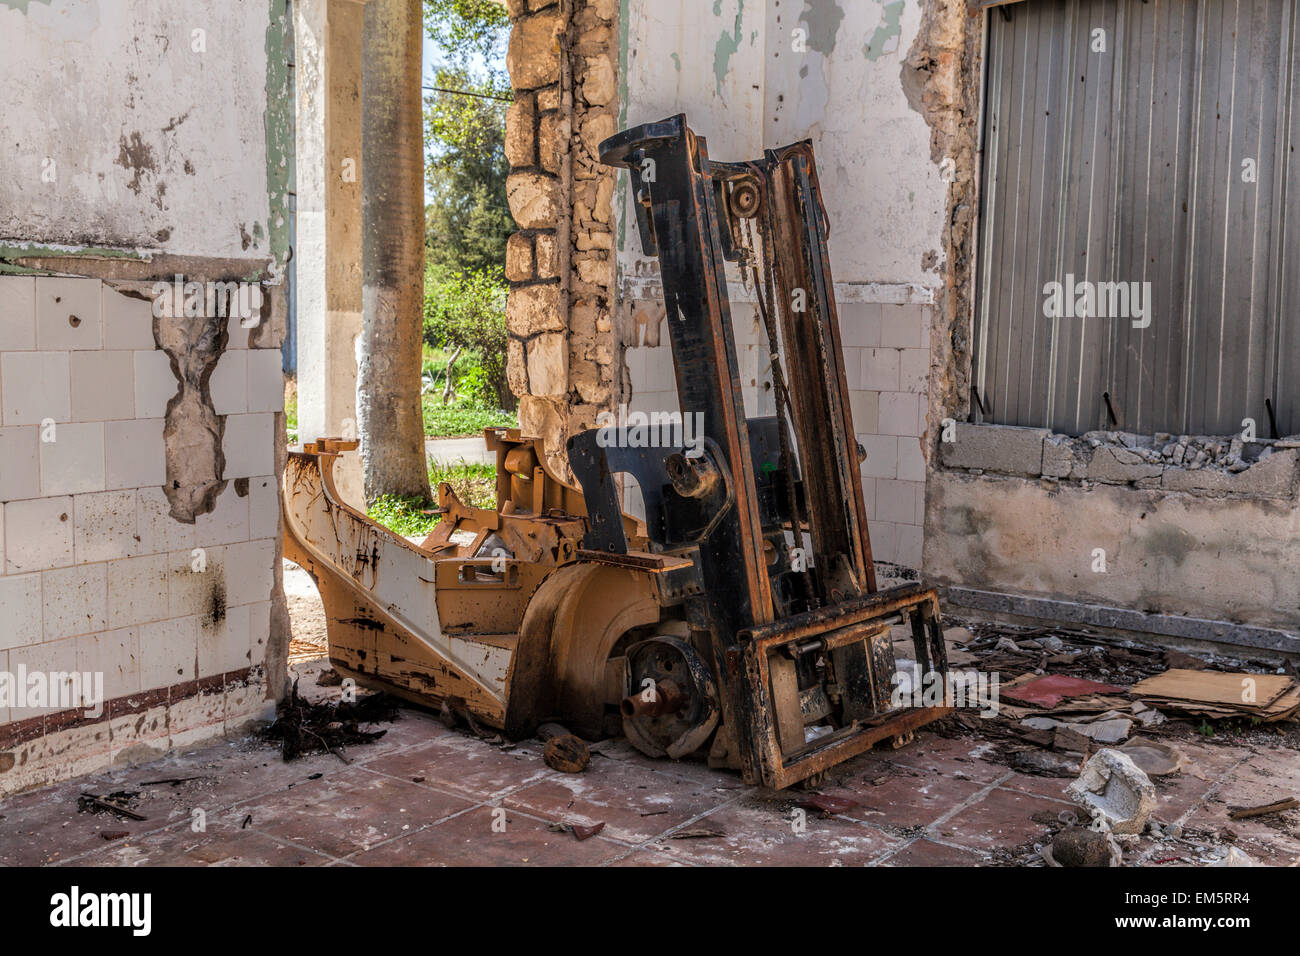 Rostige Gabelstapler in einem verlassenen verfallenden Gebäude in einem abgelegenen Teil von Kuba Stockfoto